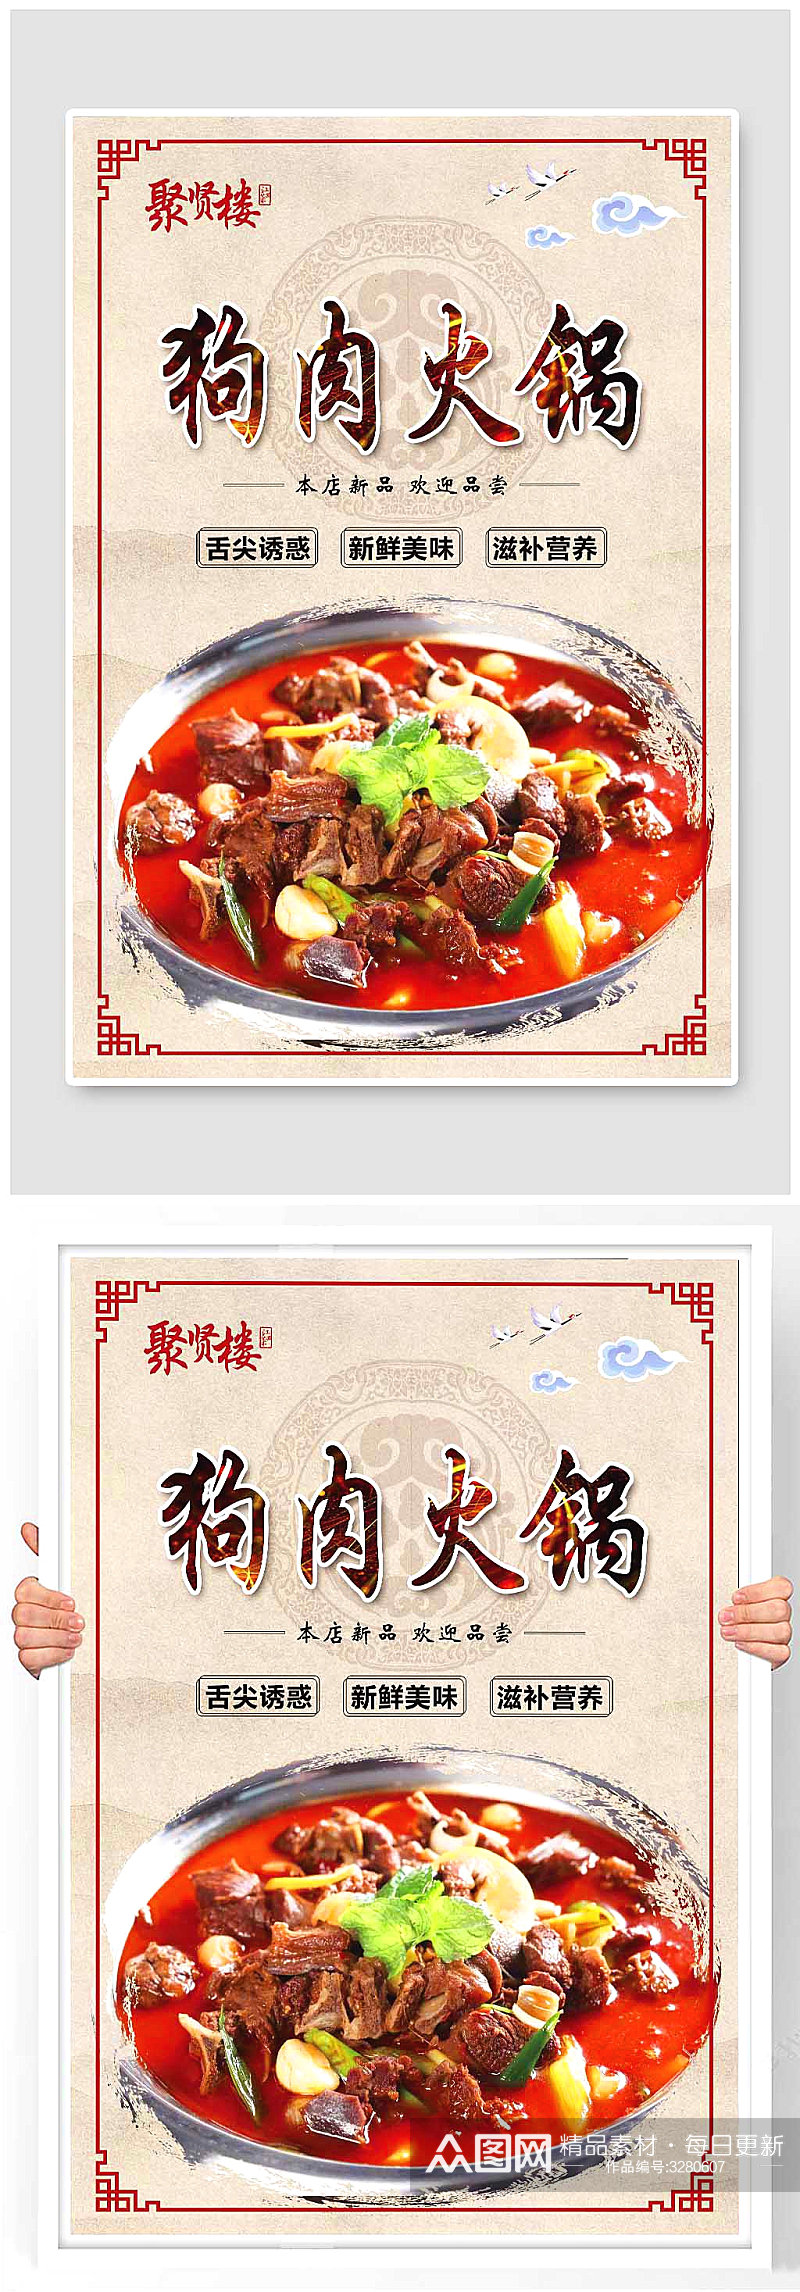 狗肉火锅菜品海报素材